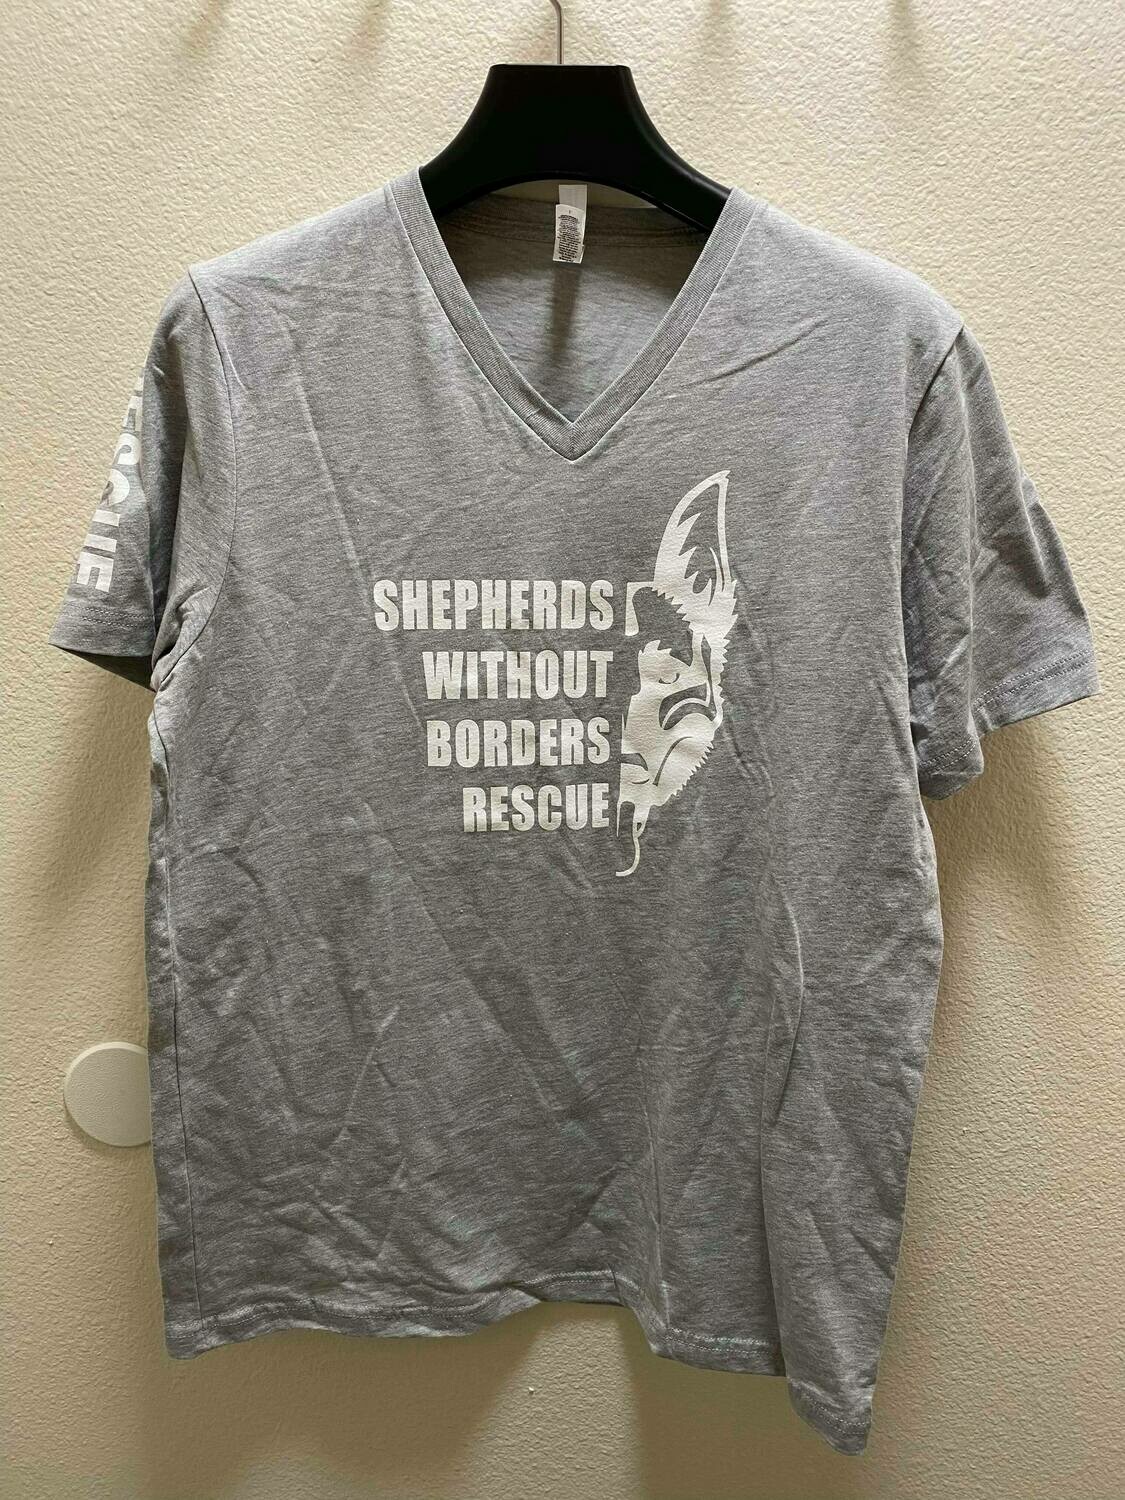 SWB Supporter V-Neck Shirt (Grey) - Medium